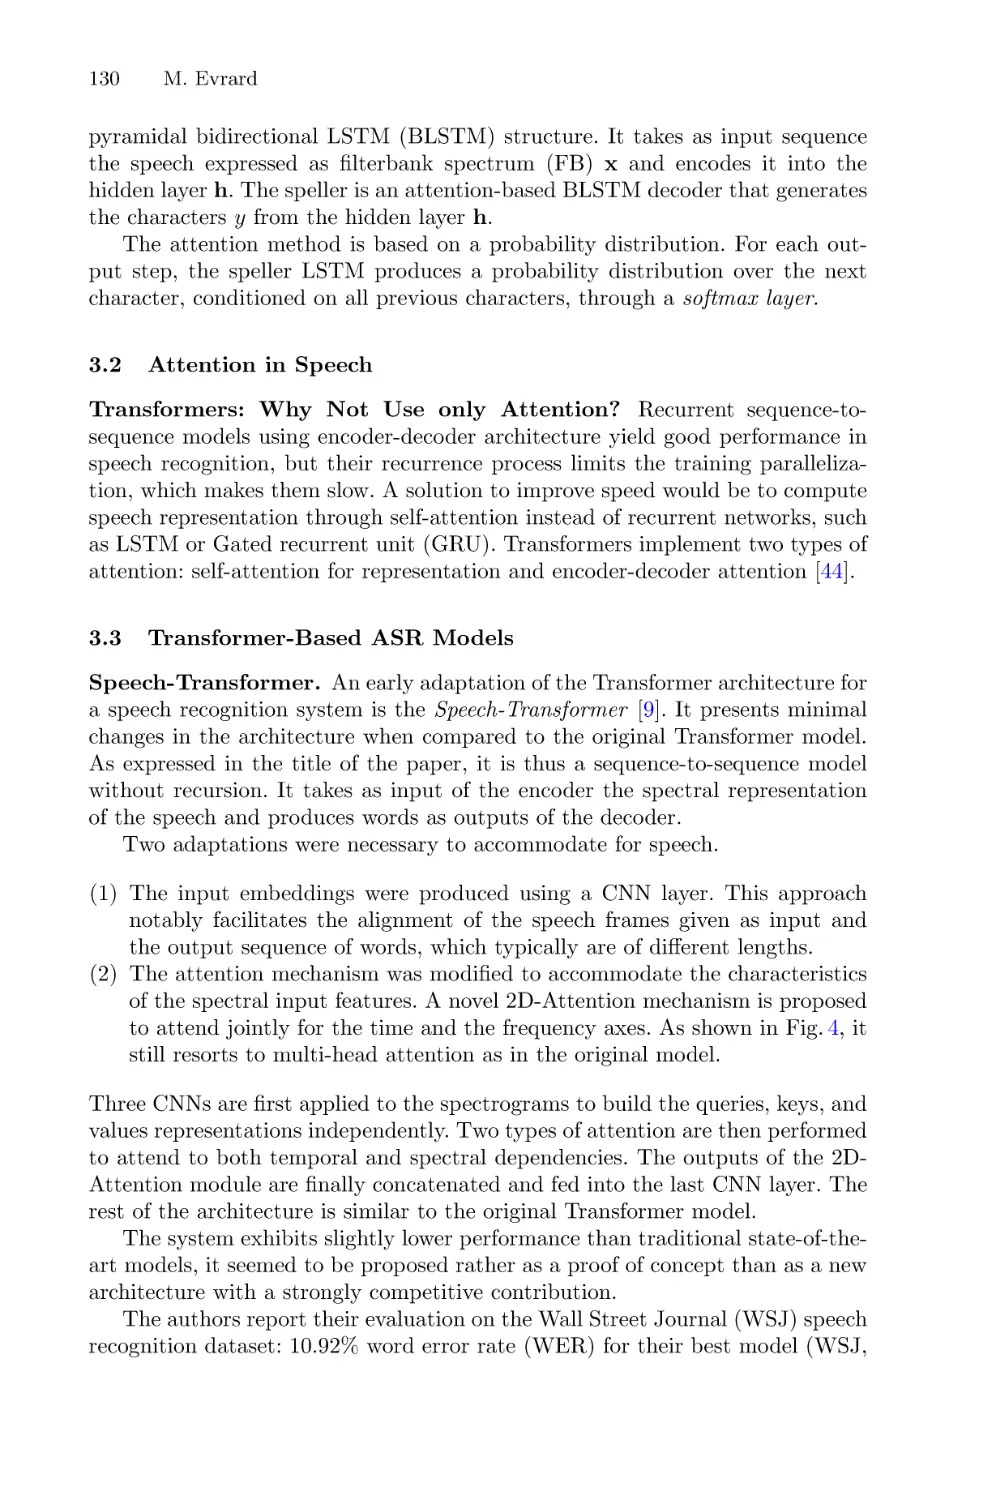 3.2 Attention in Speech
3.3 Transformer-Based ASR Models